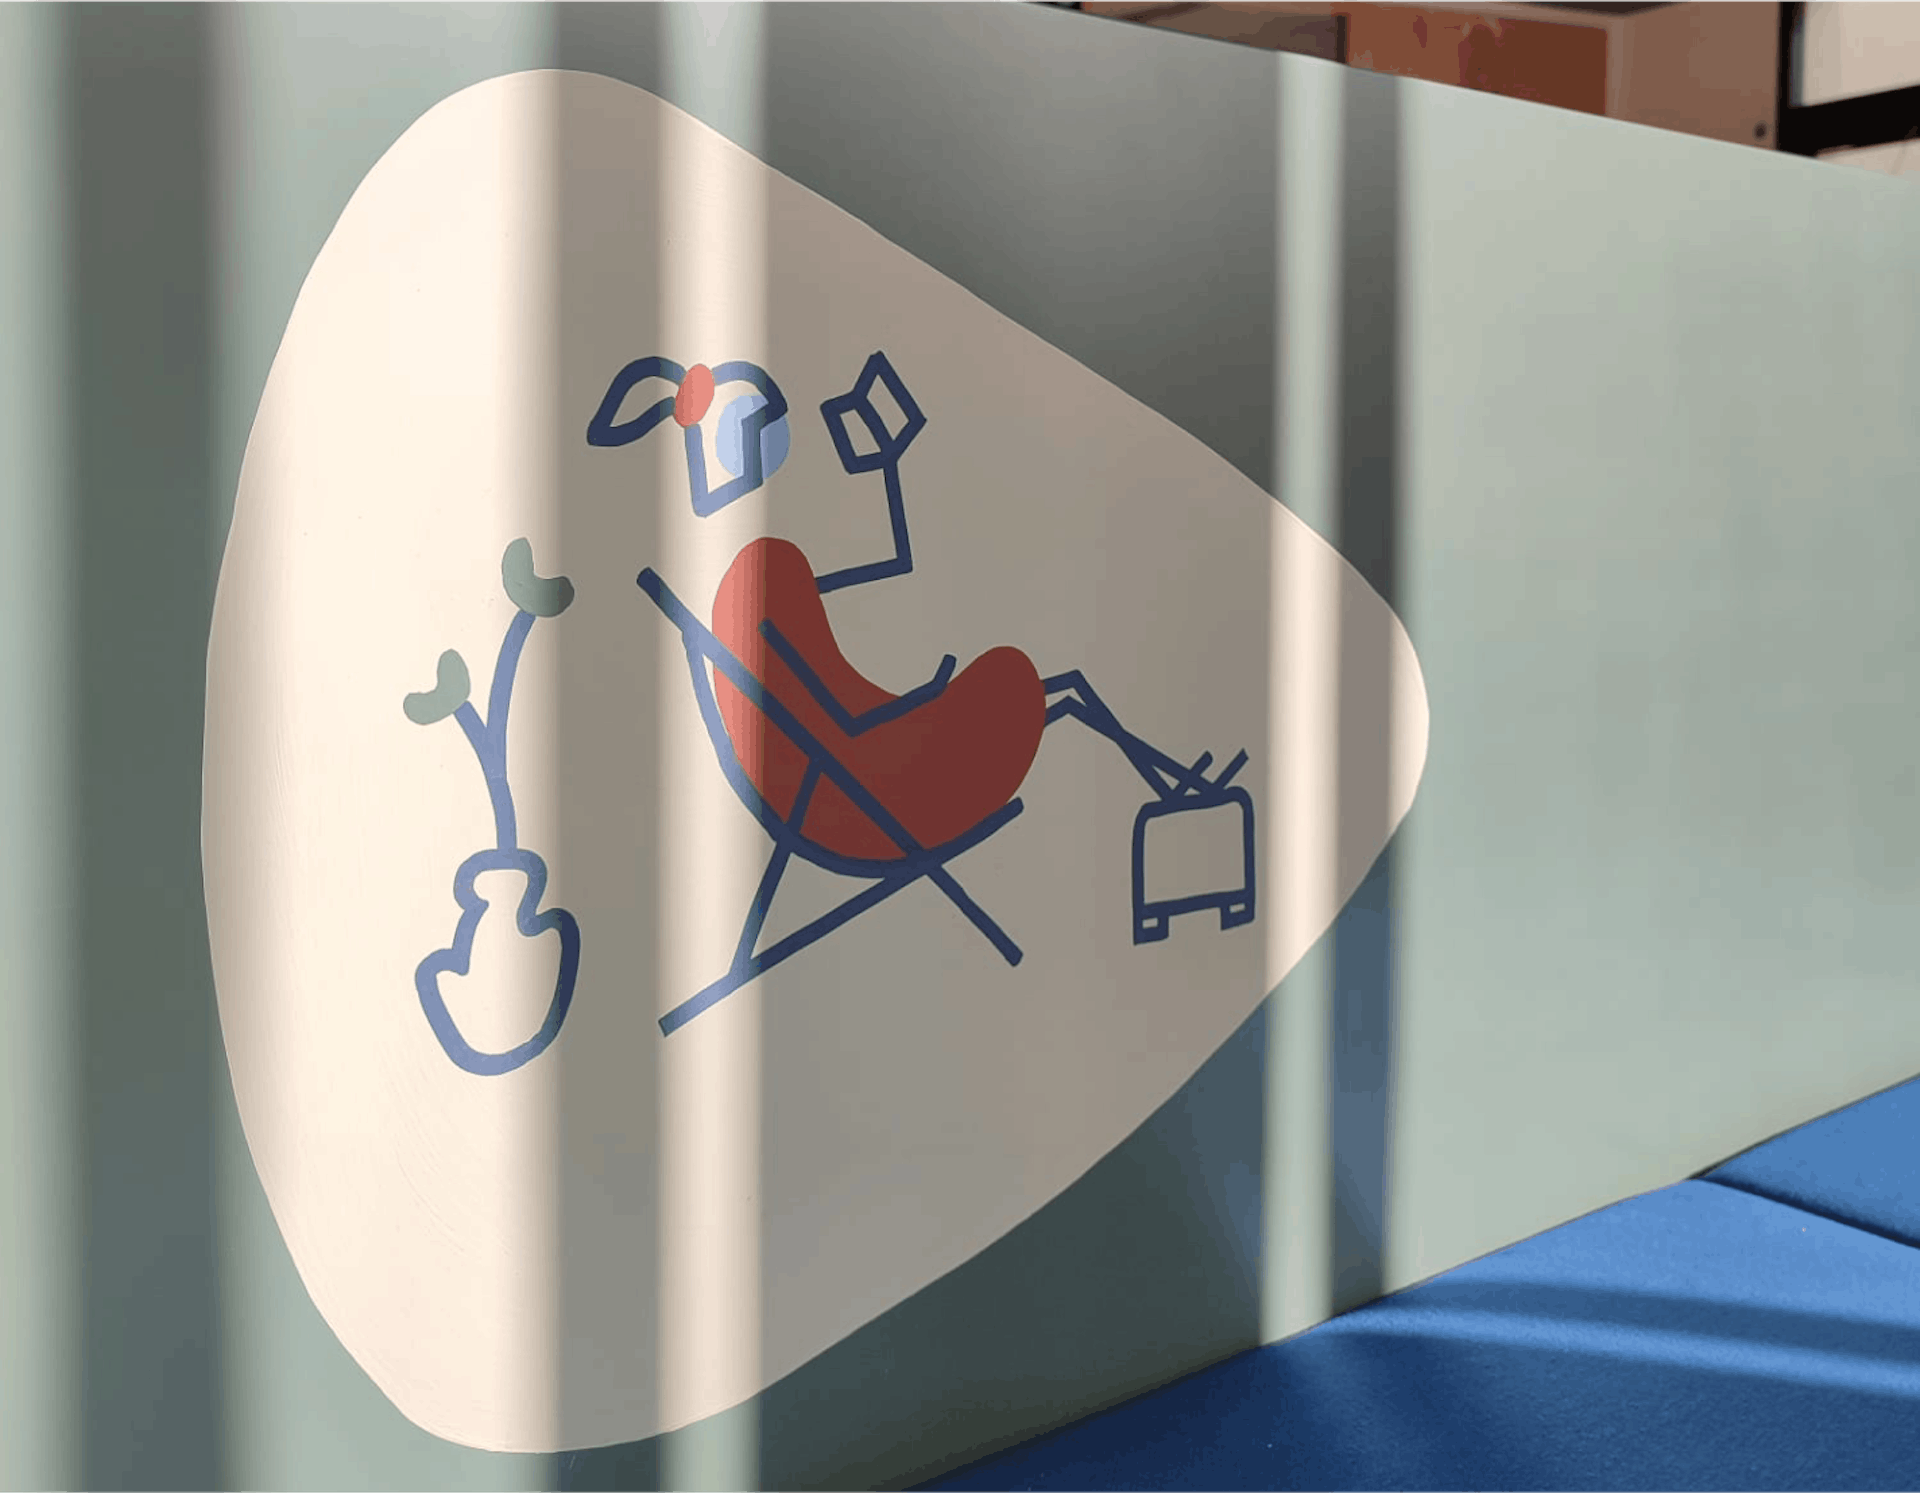 Un personnage filaire en train de lire un livre, peint sur le mobilier dédié à l'aménagement intérieur des nouveaux locaux de la CCI Saint-Nazaire, réalisé par l'agence de design Studio Katra.